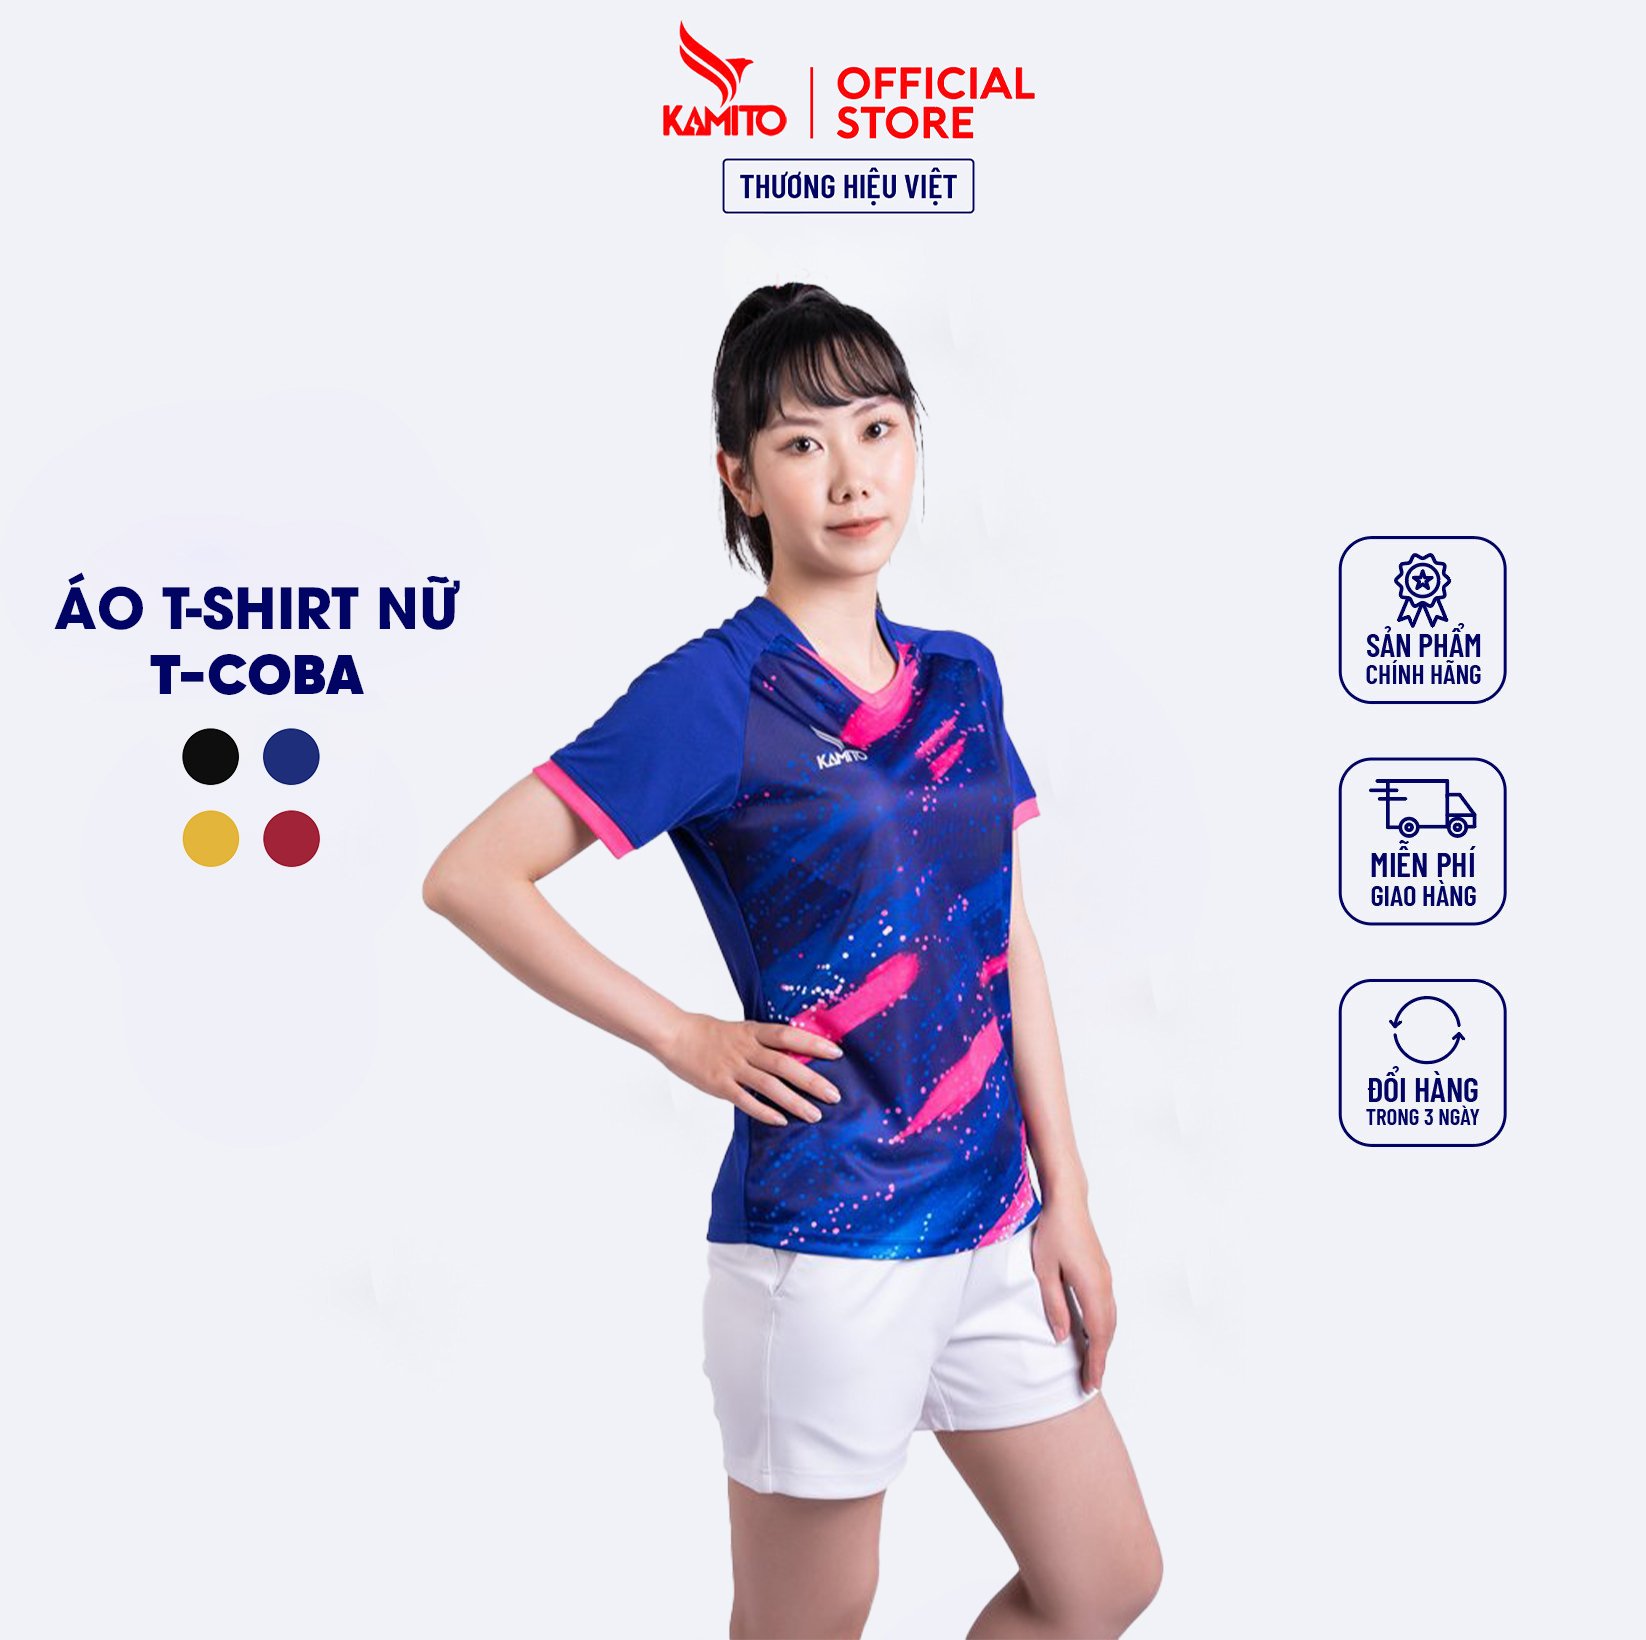 Áo T-shirt Cầu Lông Nữ T-COBA KAMITO 2022 Với Họa Tiết Ấn Tượng Lấy Cảm